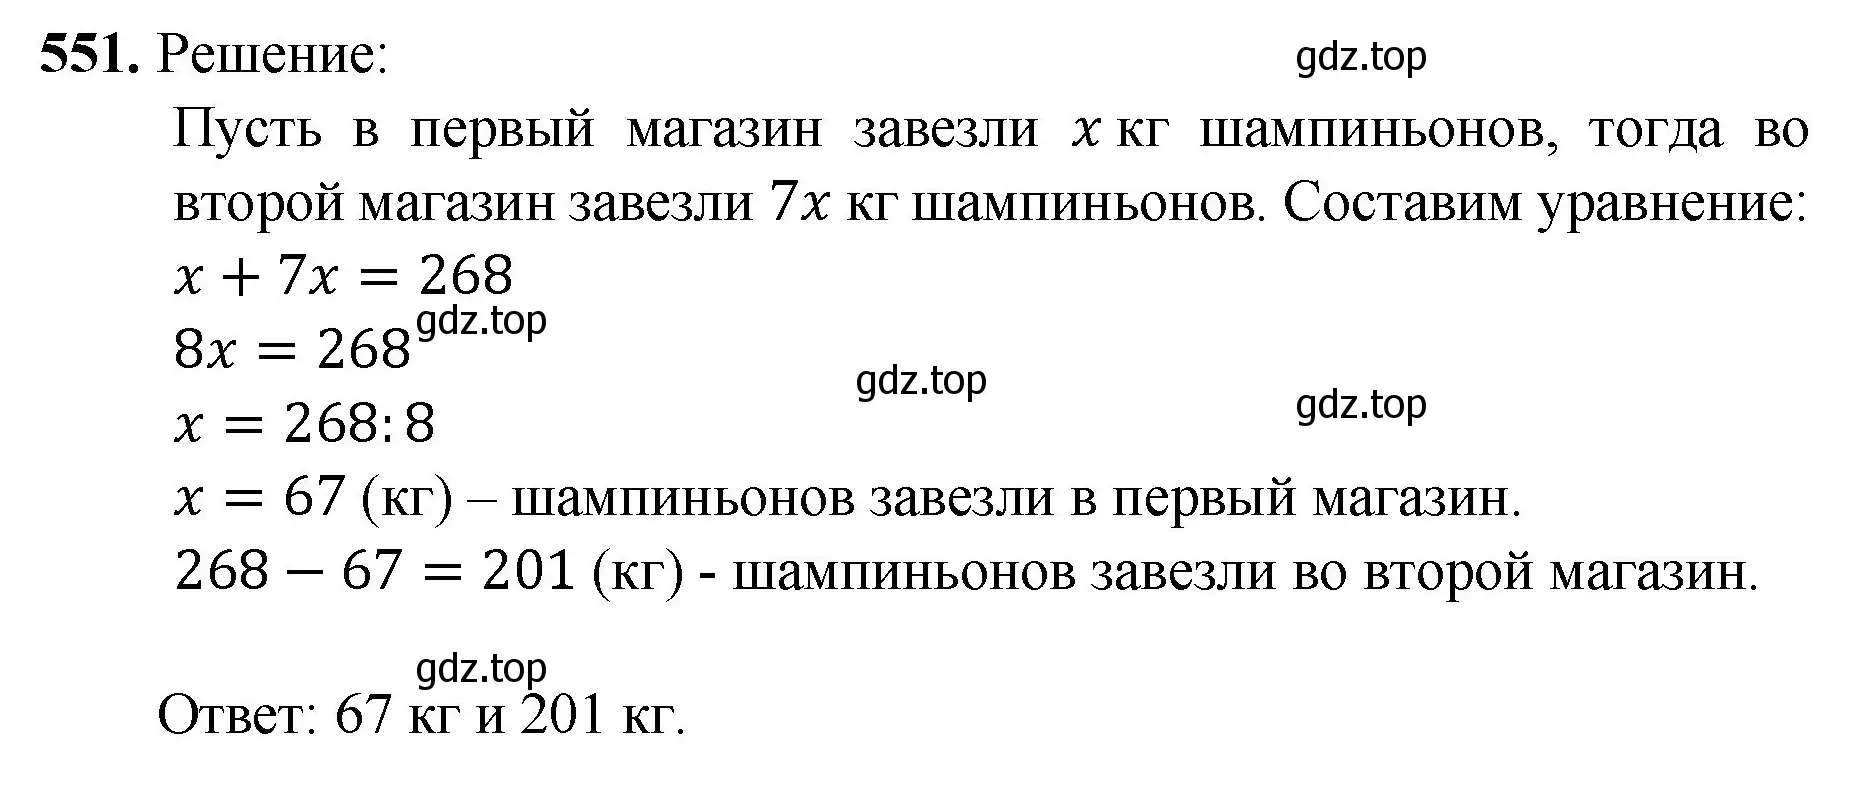 Решение номер 551 (страница 135) гдз по математике 5 класс Мерзляк, Полонский, учебник